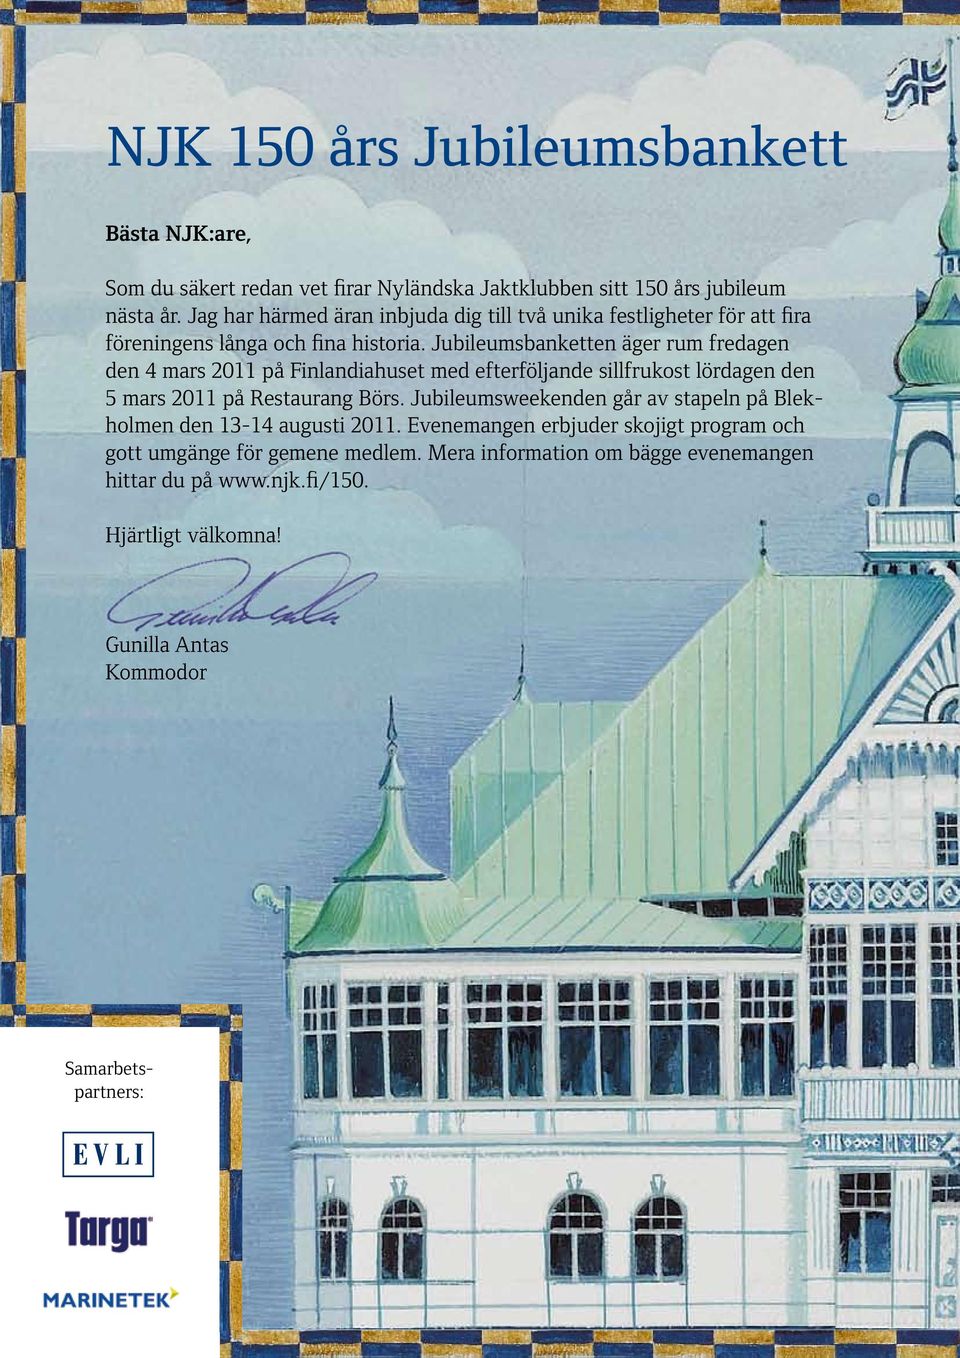 Jubileumsbanketten äger rum fredagen den 4 mars 2011 på Finlandiahuset med efterföljande sillfrukost lördagen den 5 mars 2011 på Restaurang Börs.